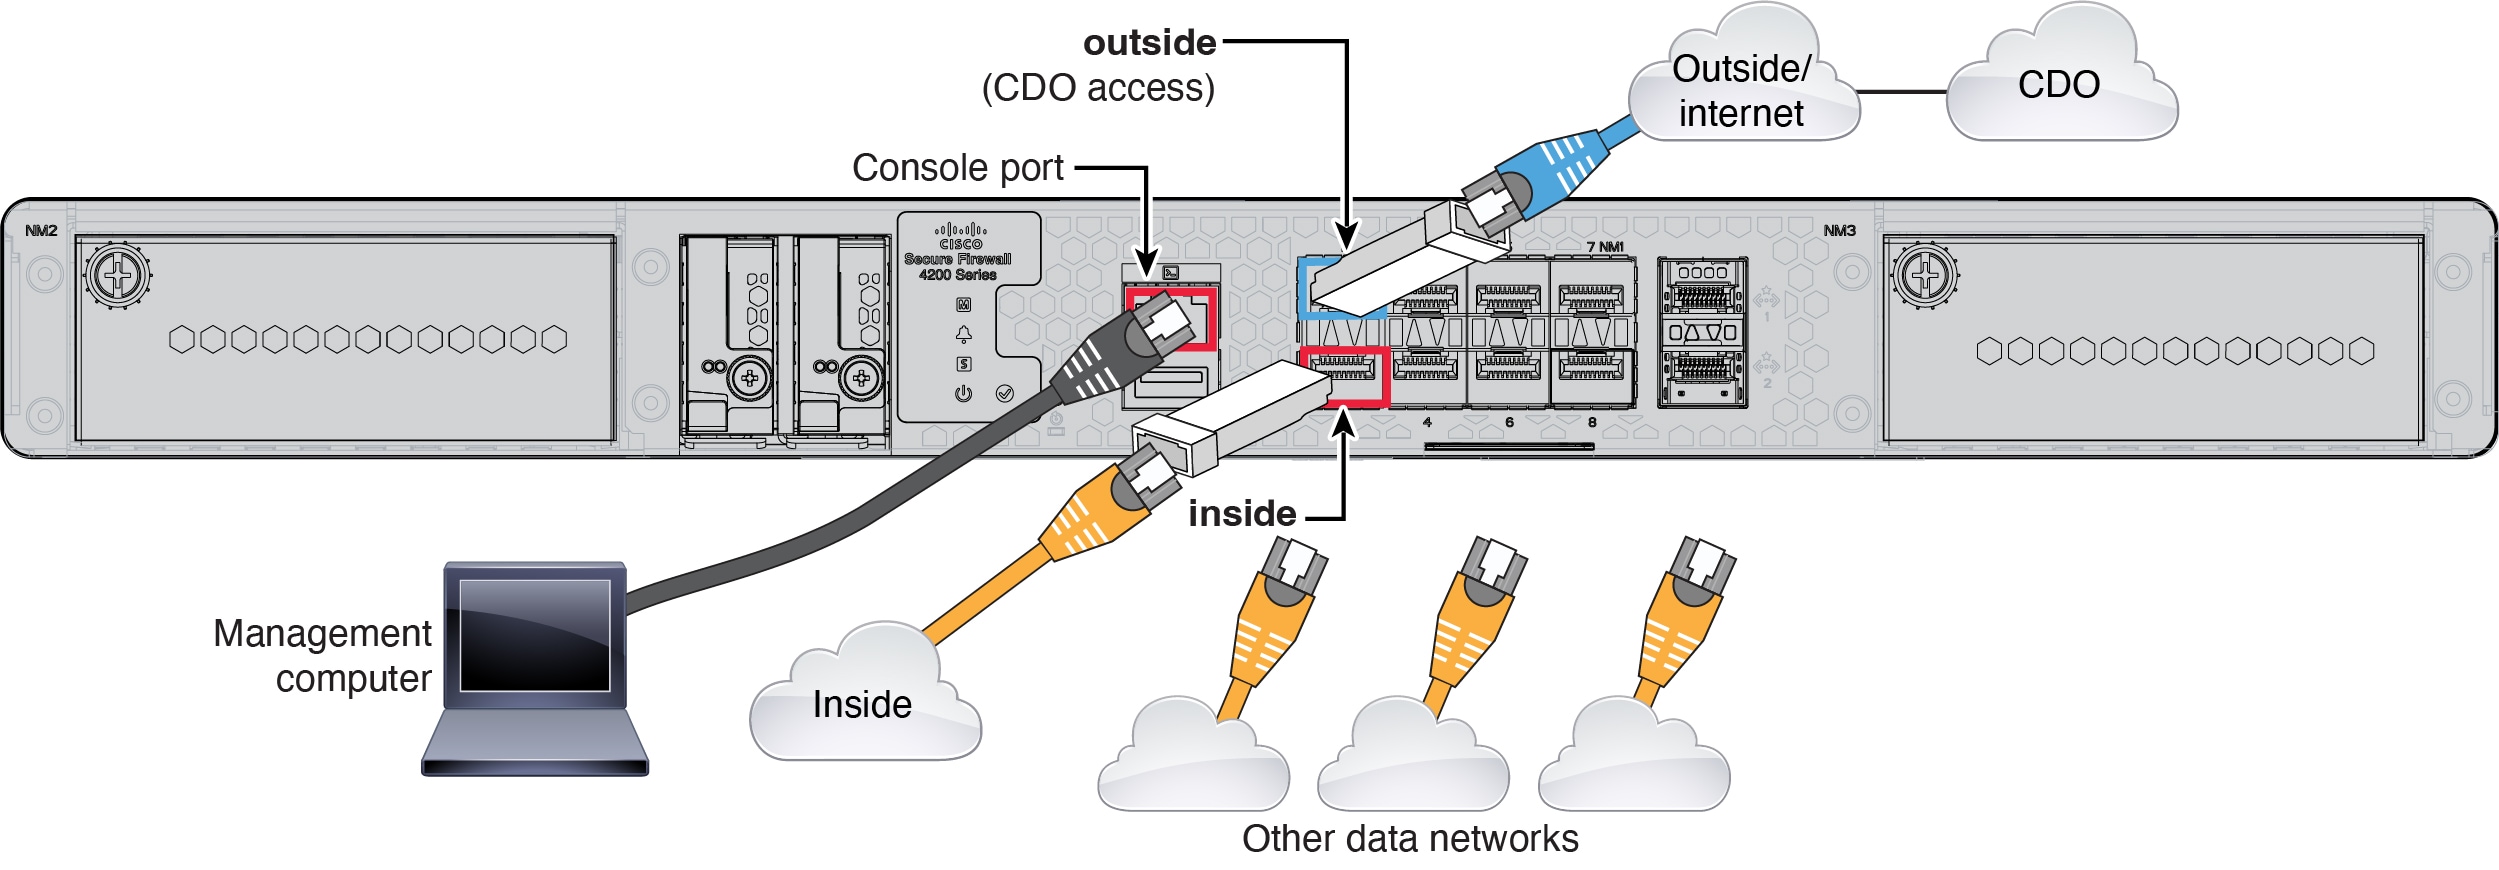 Secure Firewall 4200 케이블 연결